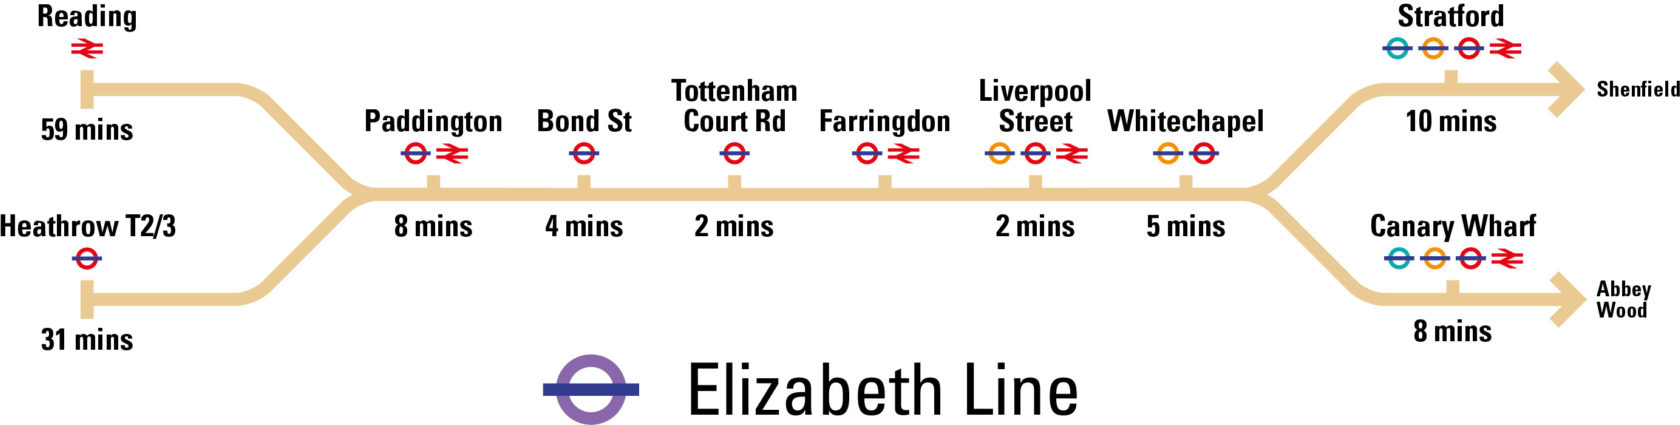 Elizabeth line v2